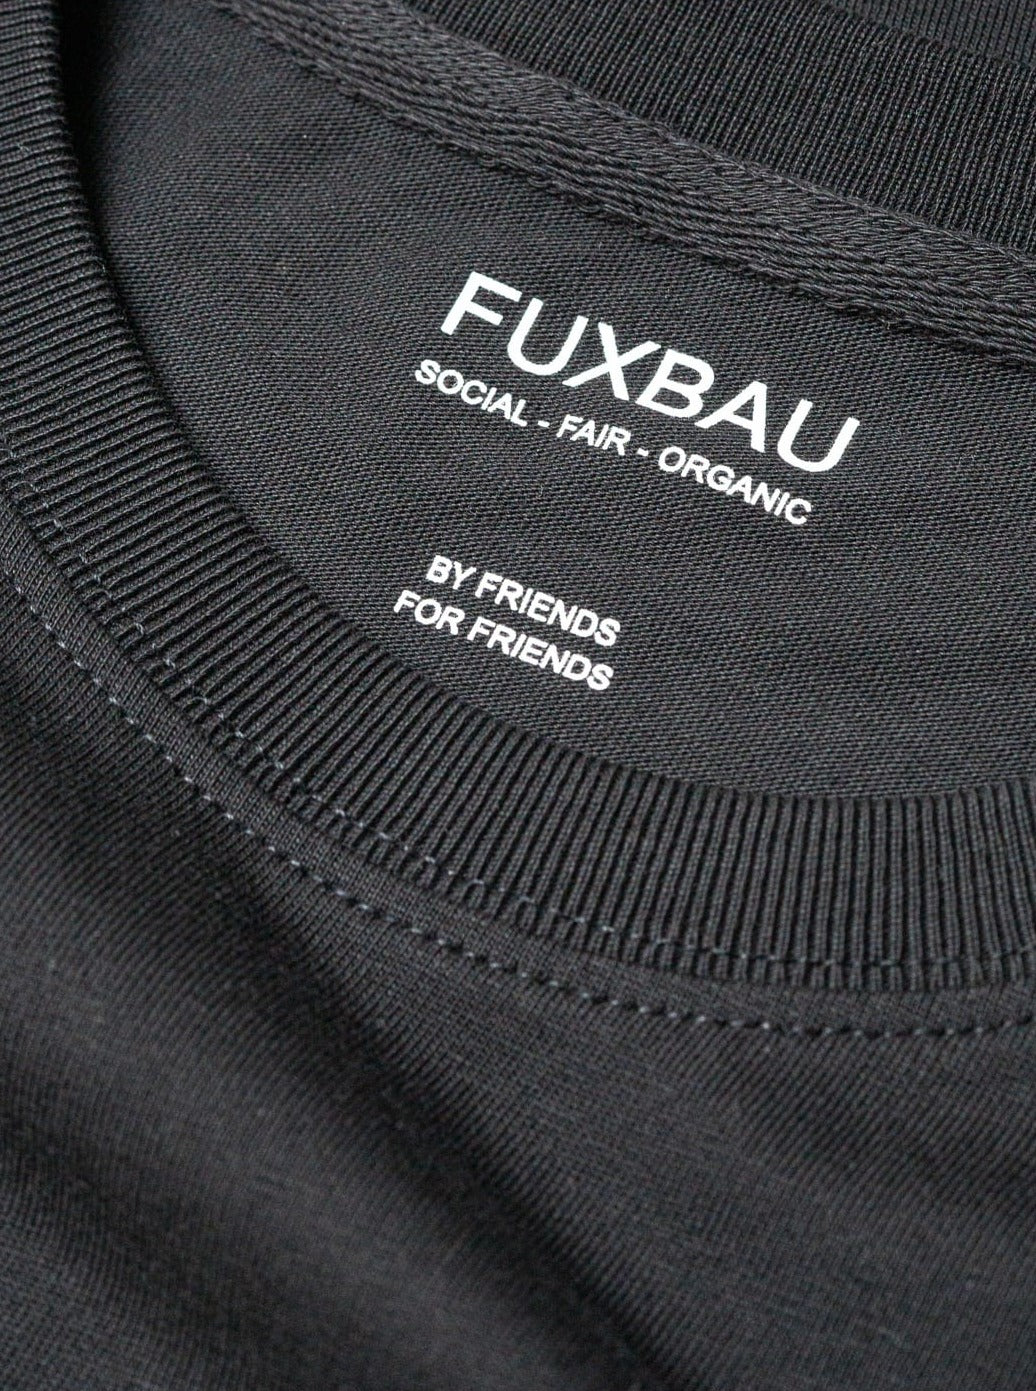 qualitiativ hochwertig, preiswert und nachhaltiges Basic T-Shirt in schwarz von FUXBAU.